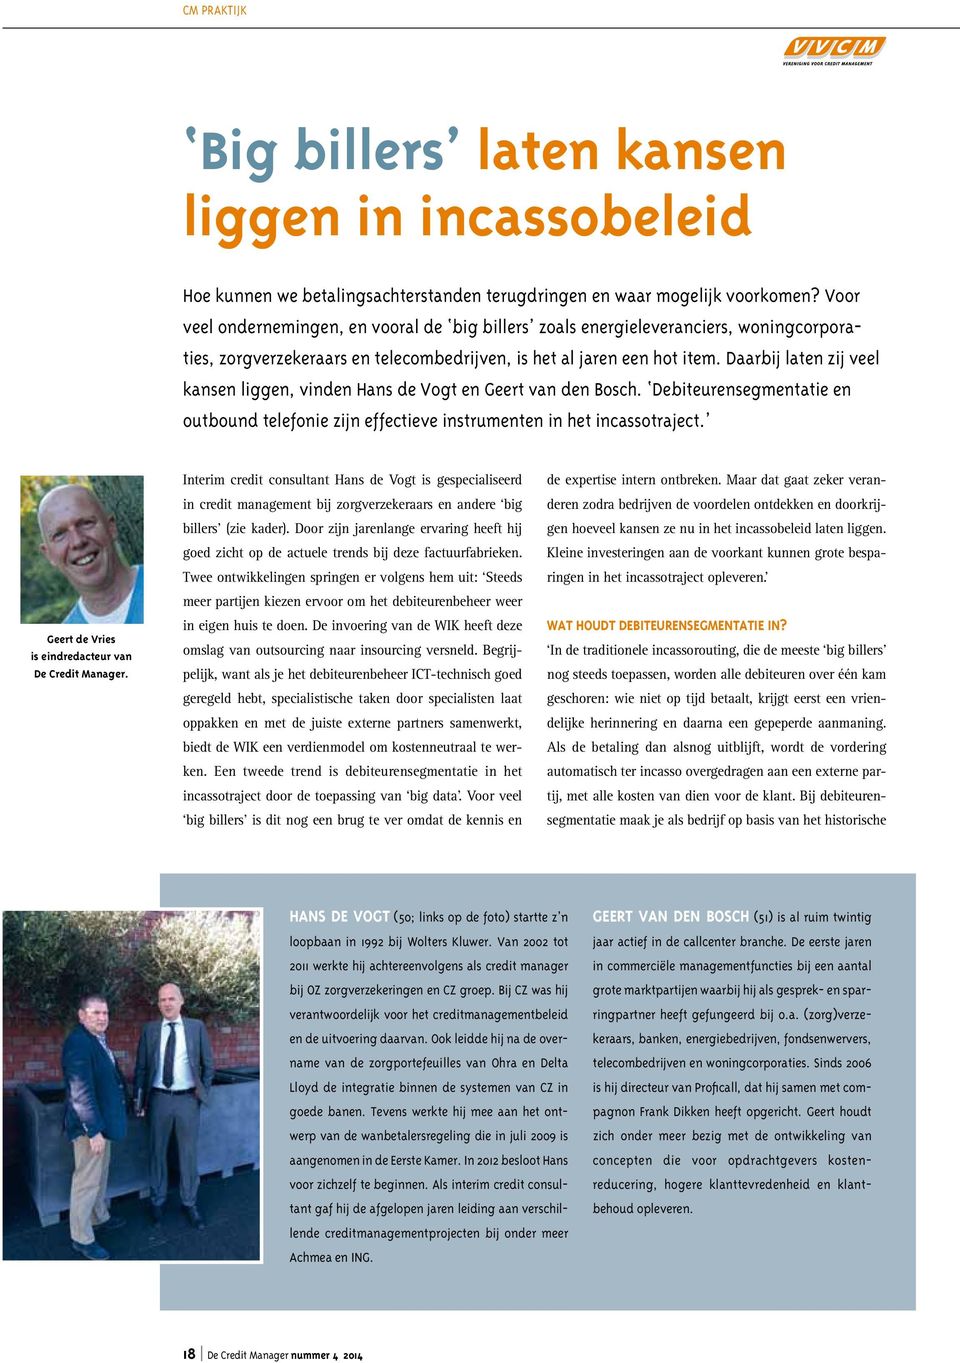 Daarbij laten zij veel kansen liggen, vinden Hans de Vogt en Geert van den Bosch. Debiteurensegmentatie en outbound telefonie zijn effectieve instrumenten in het incassotraject.